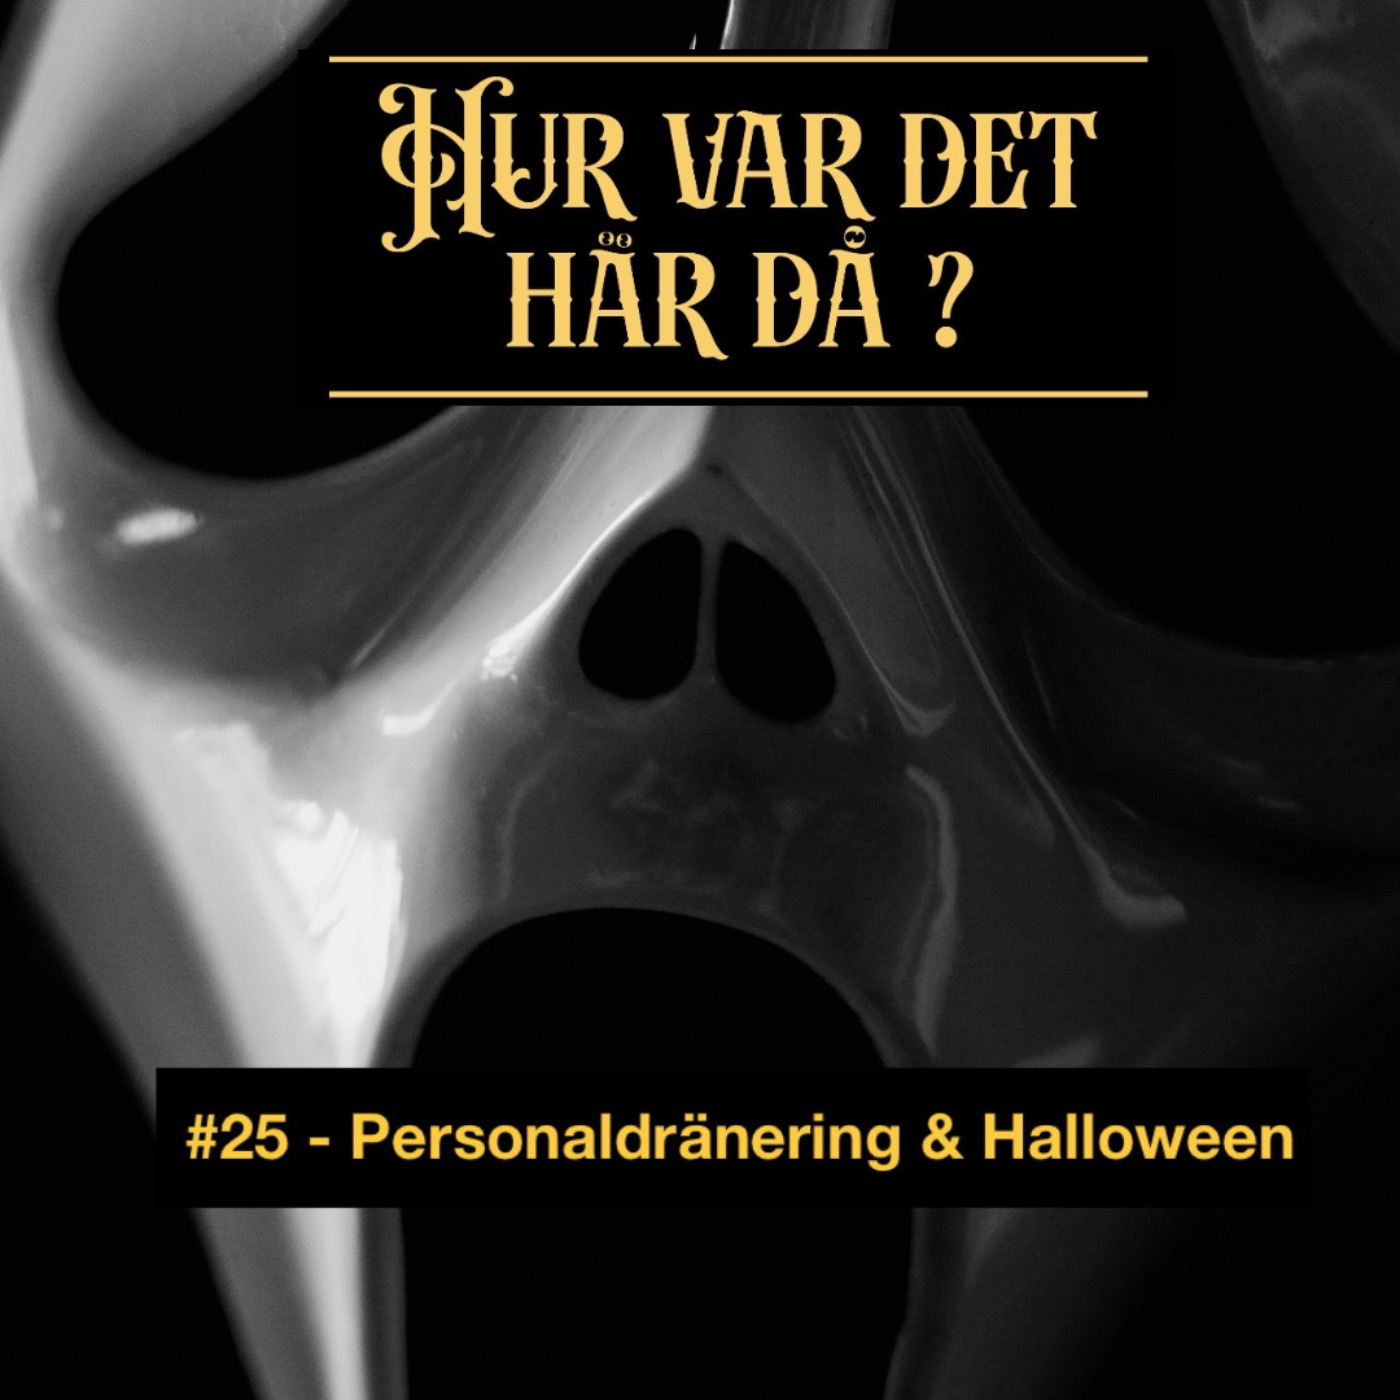 #25 - Personaldränering & Halloween